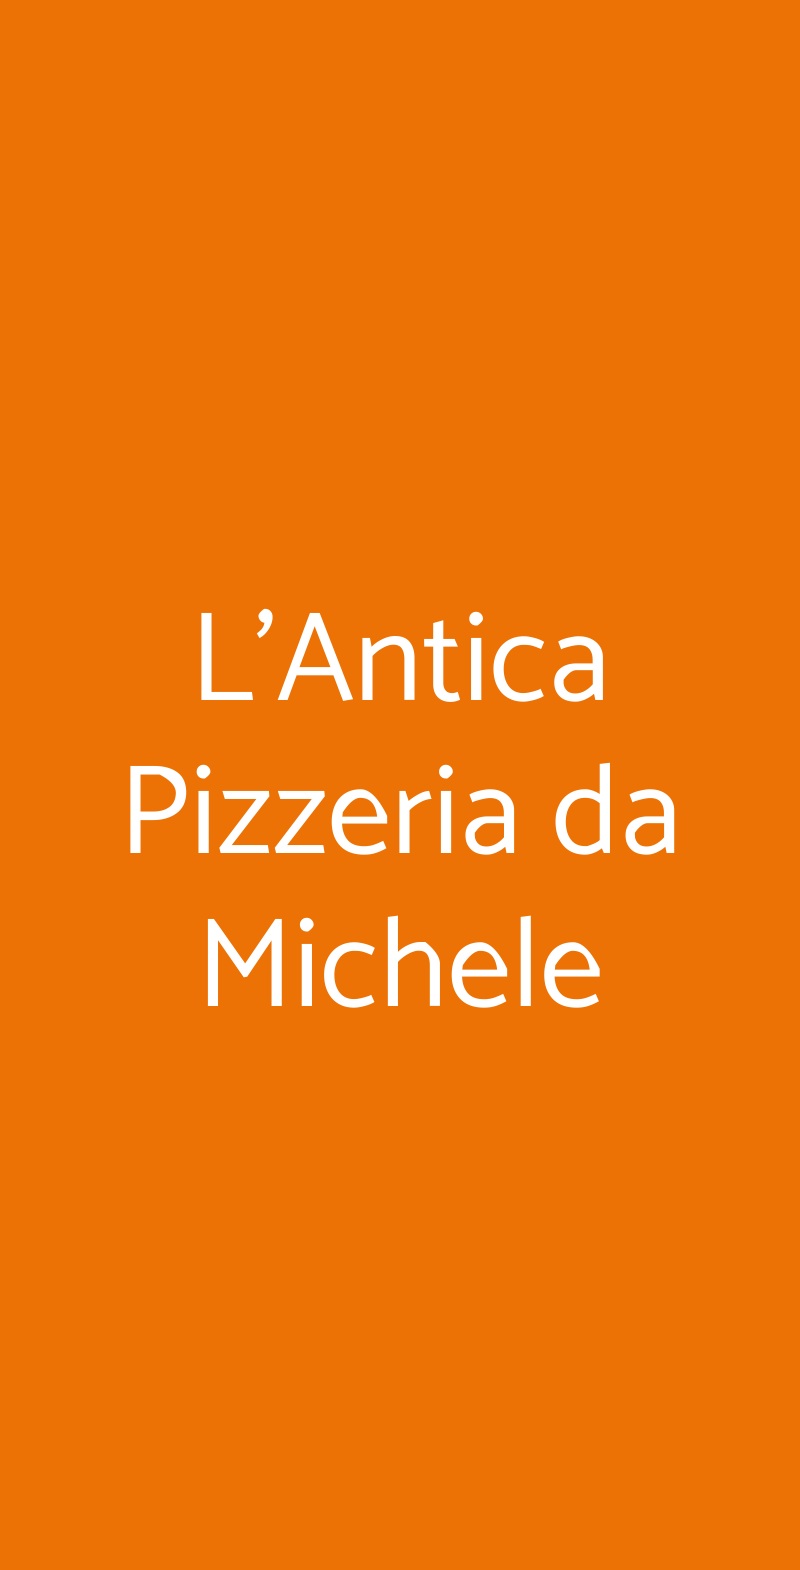 L'Antica Pizzeria da Michele Napoli menù 1 pagina